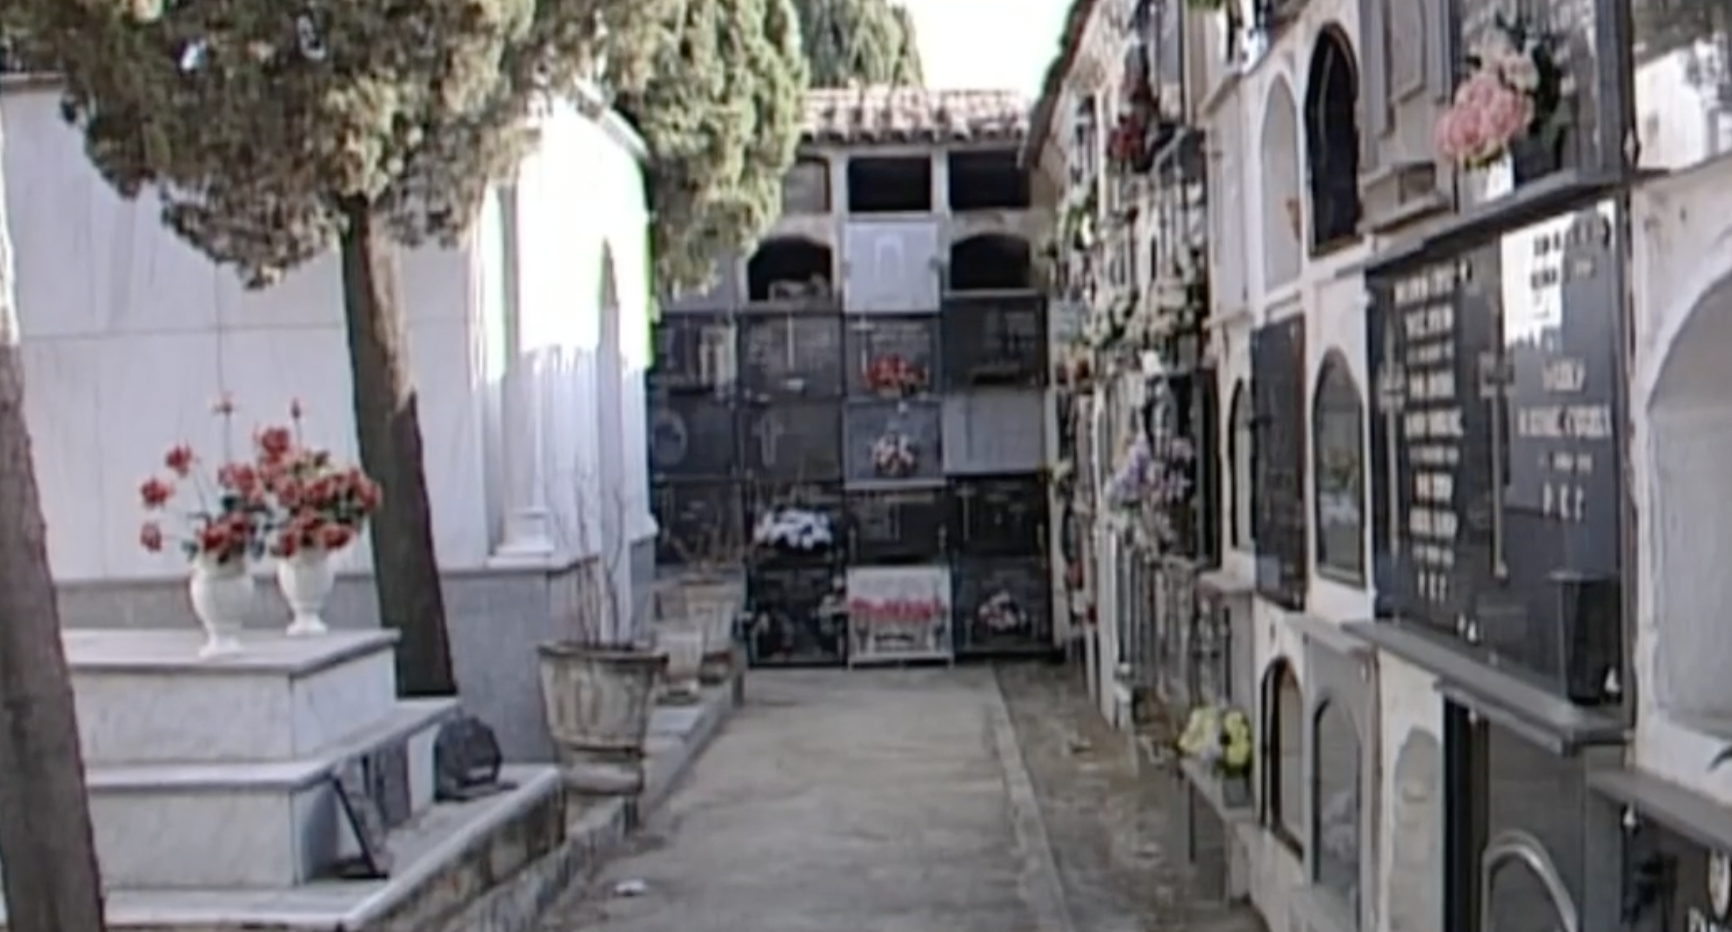 Misterio casi resuelto: investigado un vecino de Jaén por la profanación de tumbas en tres cementerios. En la imagen, camposanto de Bailén, uno en los que actuó el presunto autor de los hechos.